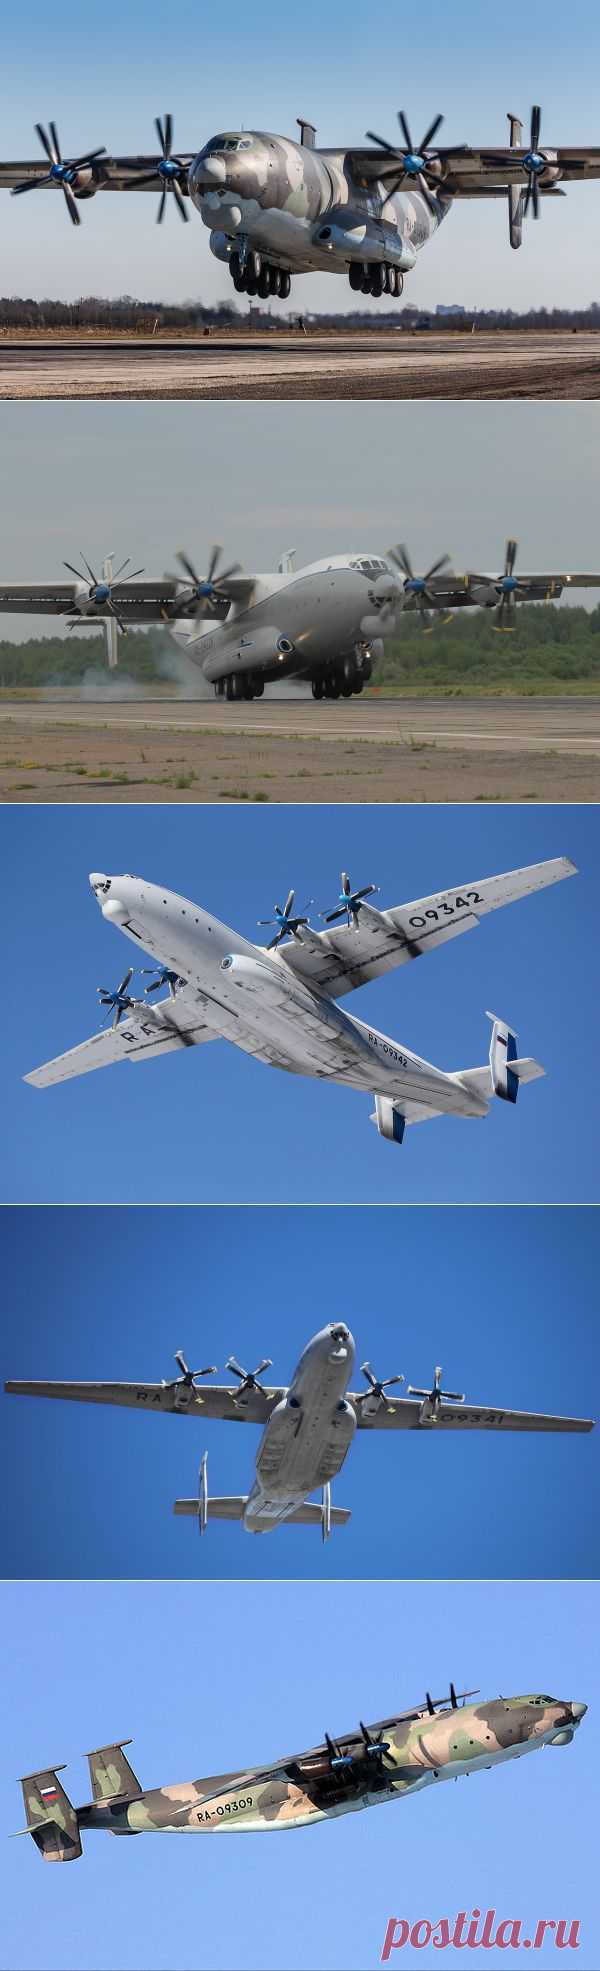 Ан-22 «Антей» широкофюзеляжный военно-транспортный самолет | Все об оружии